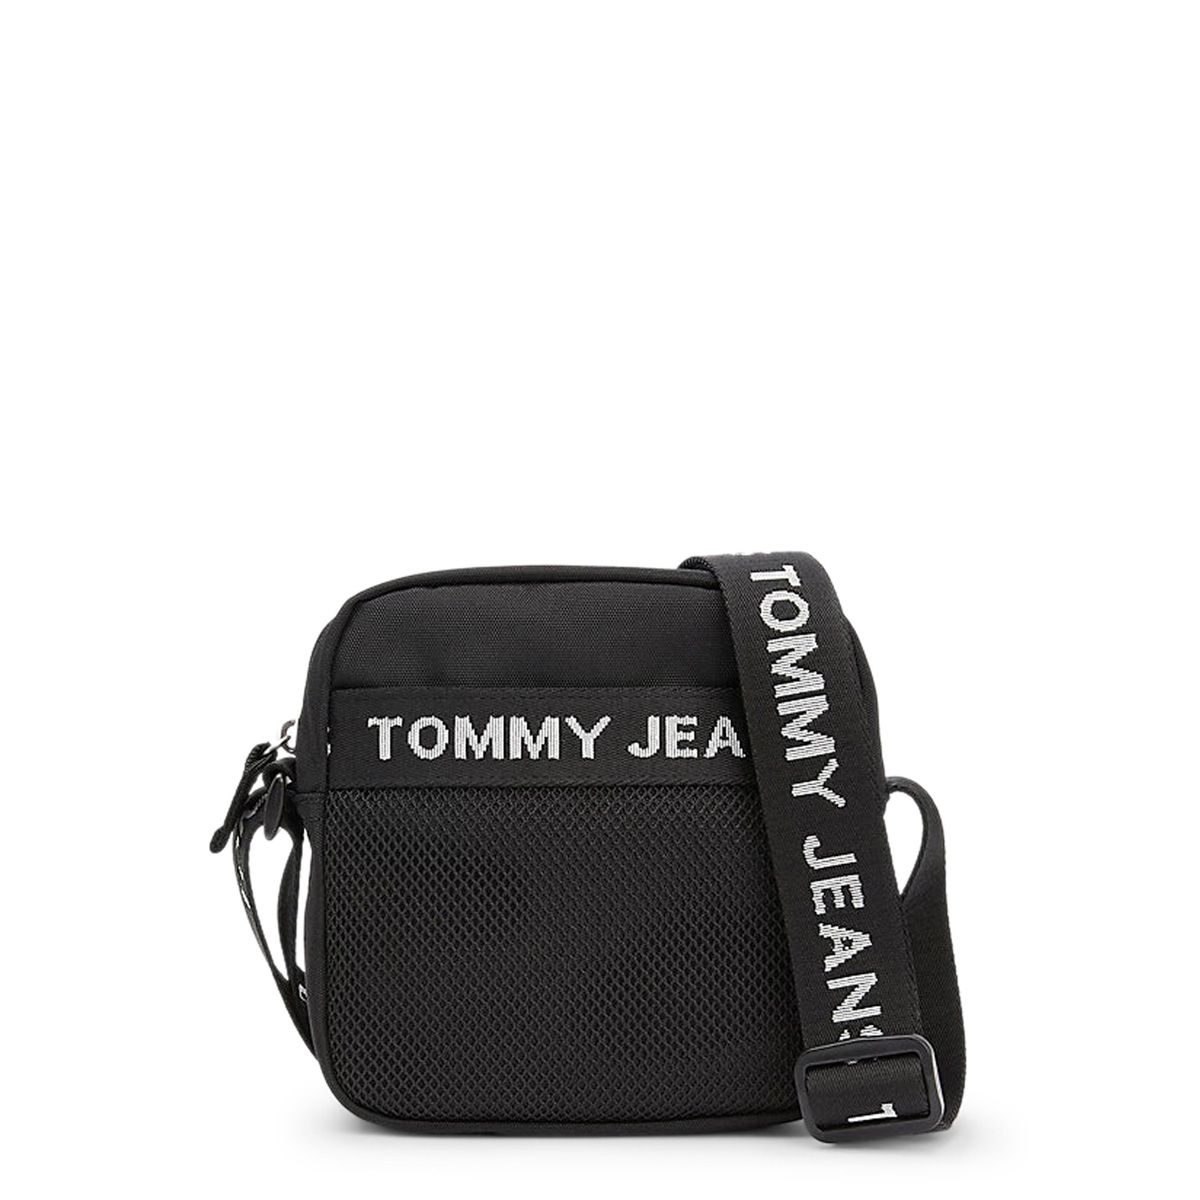 Pánská taška přes rameno Tommy Hilfiger AM0AM10901